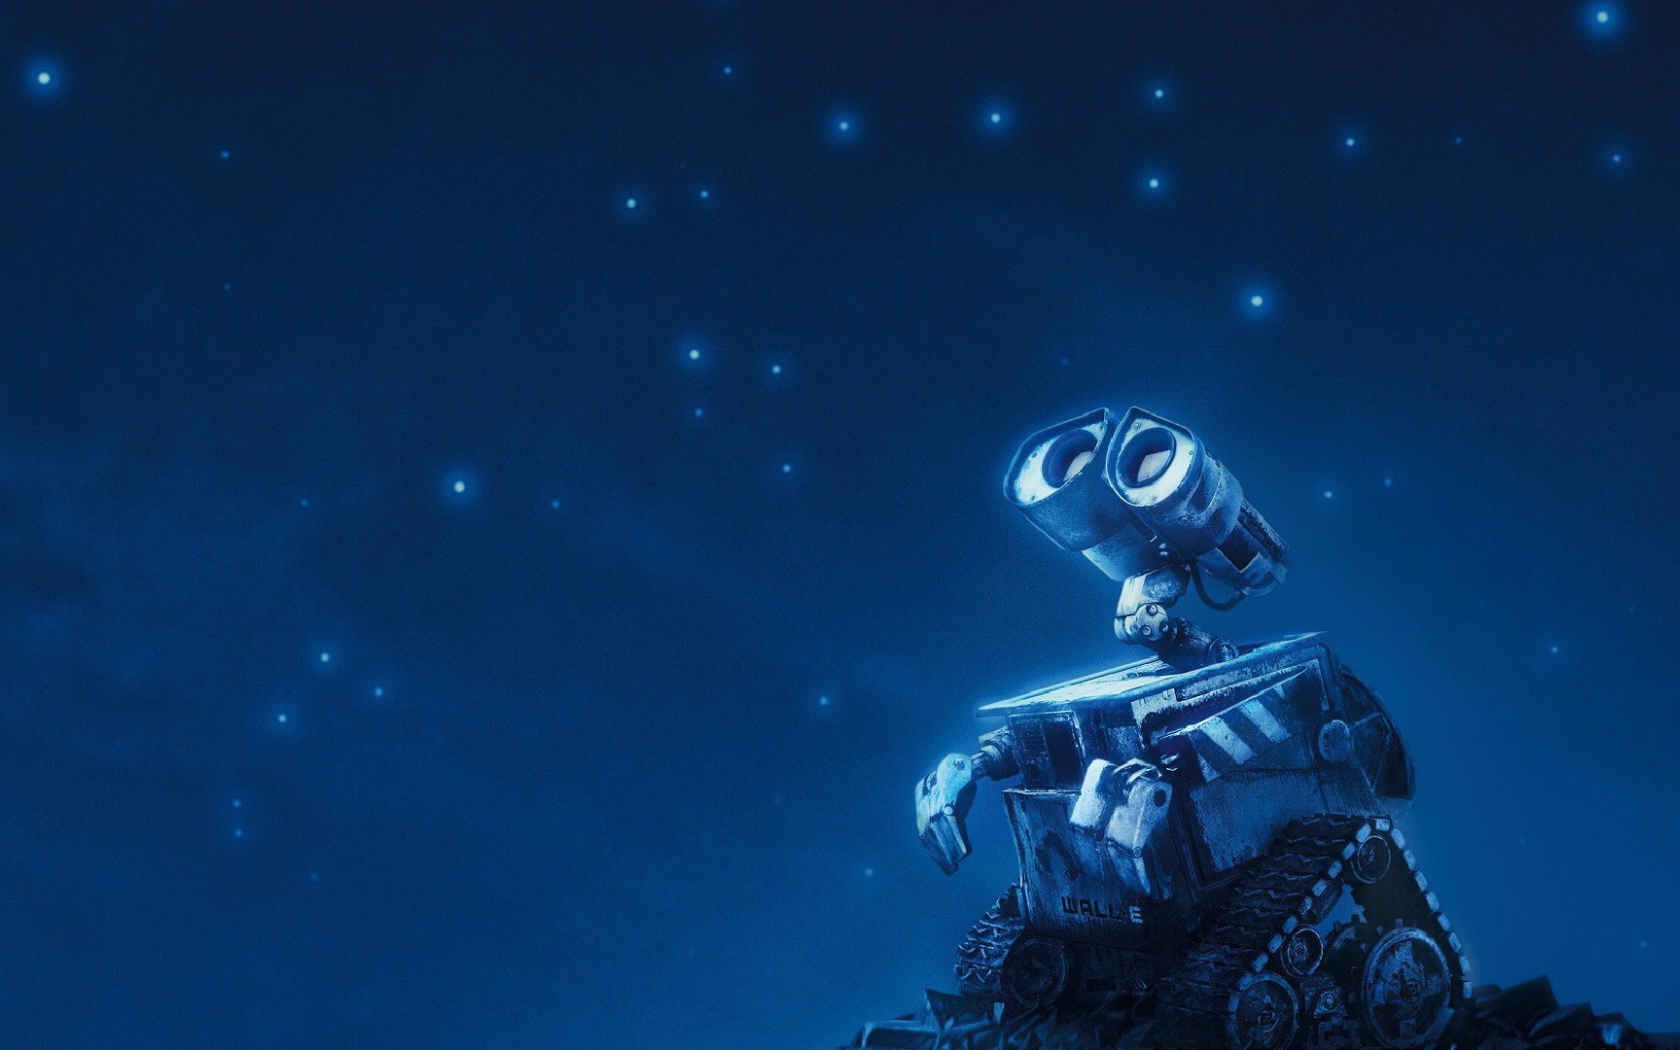 Робот WALL·E смотрит на звезды